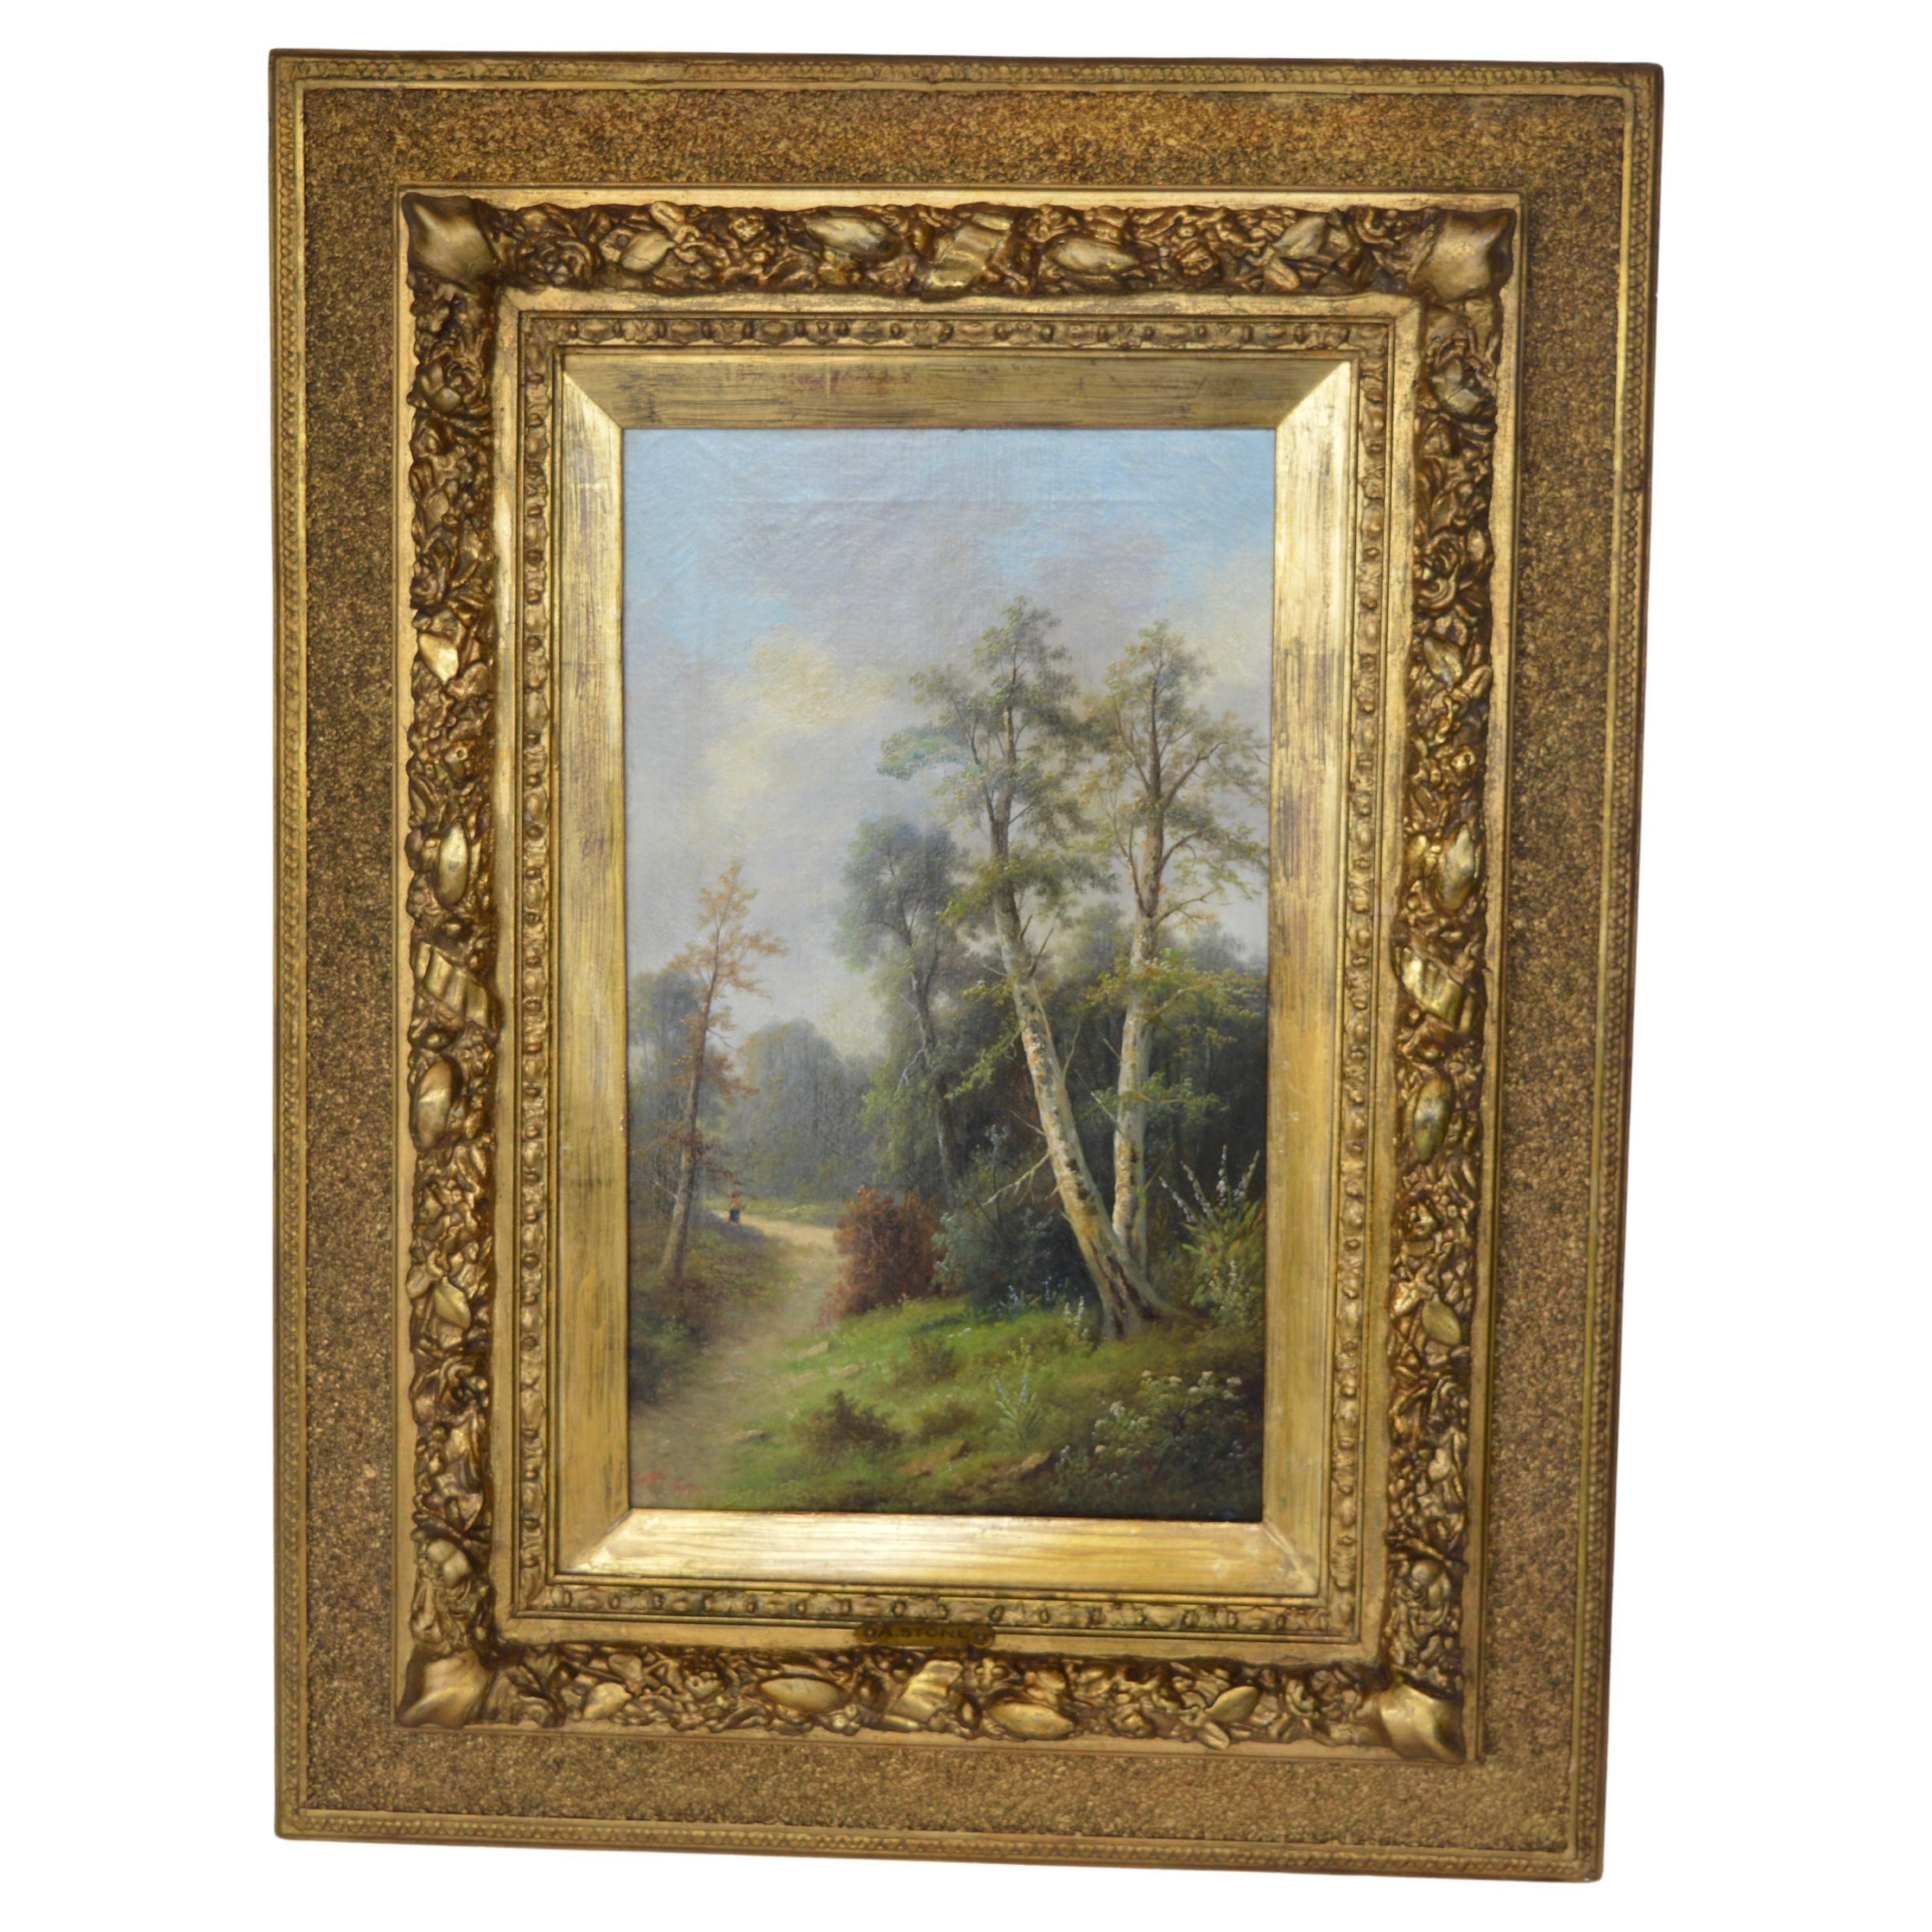 Signé Ada Stone (1879-1904) Diptyque huile sur toile. Connu pour ses peintures de paysages et d'équitation.
Mesures avec cadre : 32 ½ H x 24 ½ W x 2 ½ D
Mesures sans cadre : 20